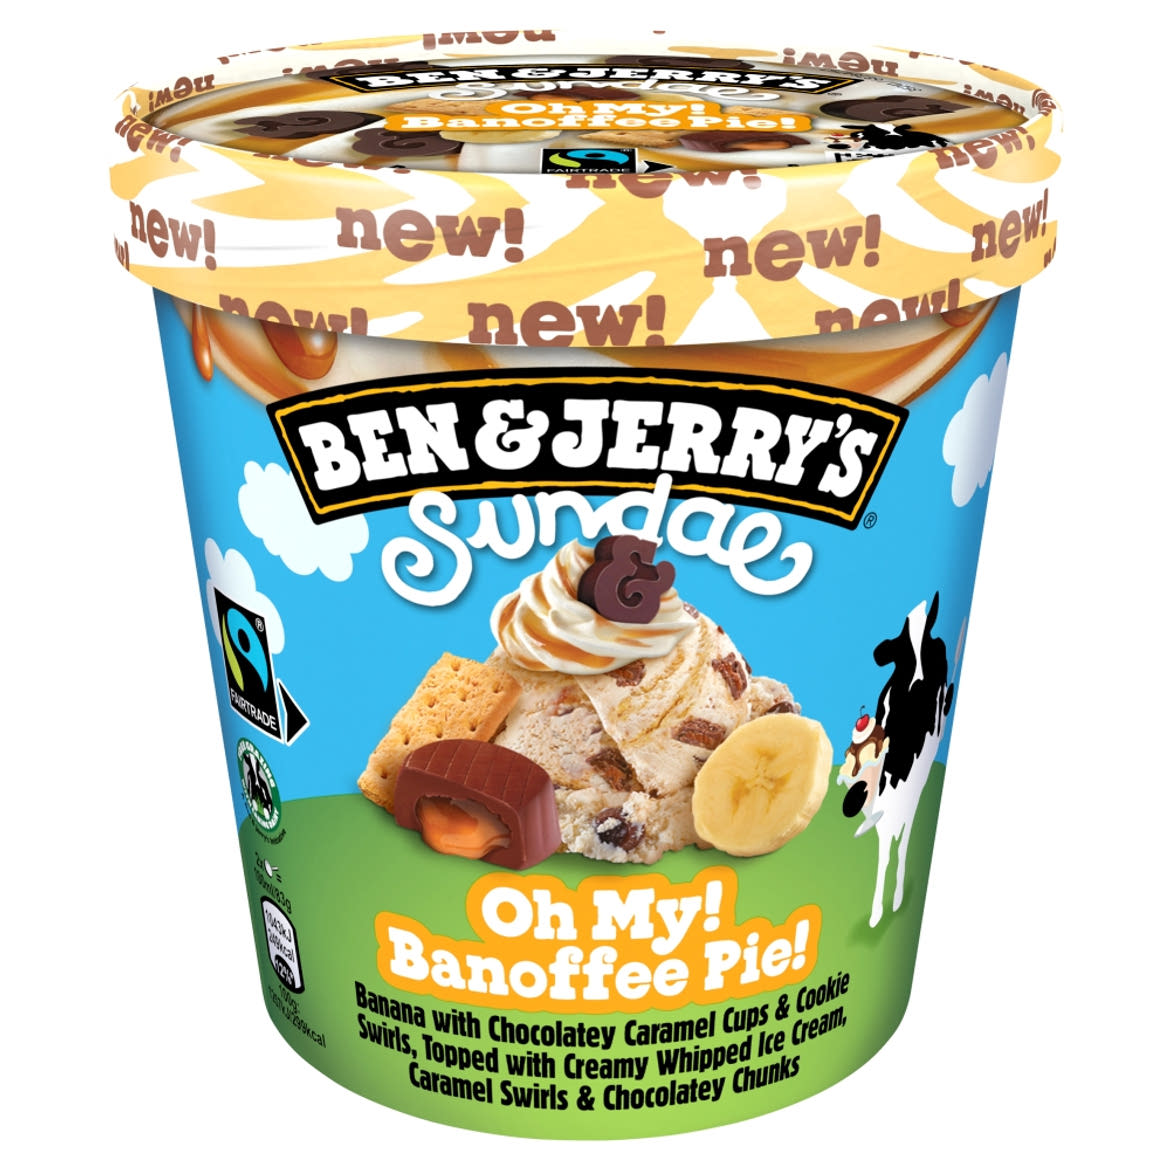 Ben & Jerry's Sundae Oh My! Banoffee Pie! jégkrém banánpürével, kakaós-karamelles csemegével